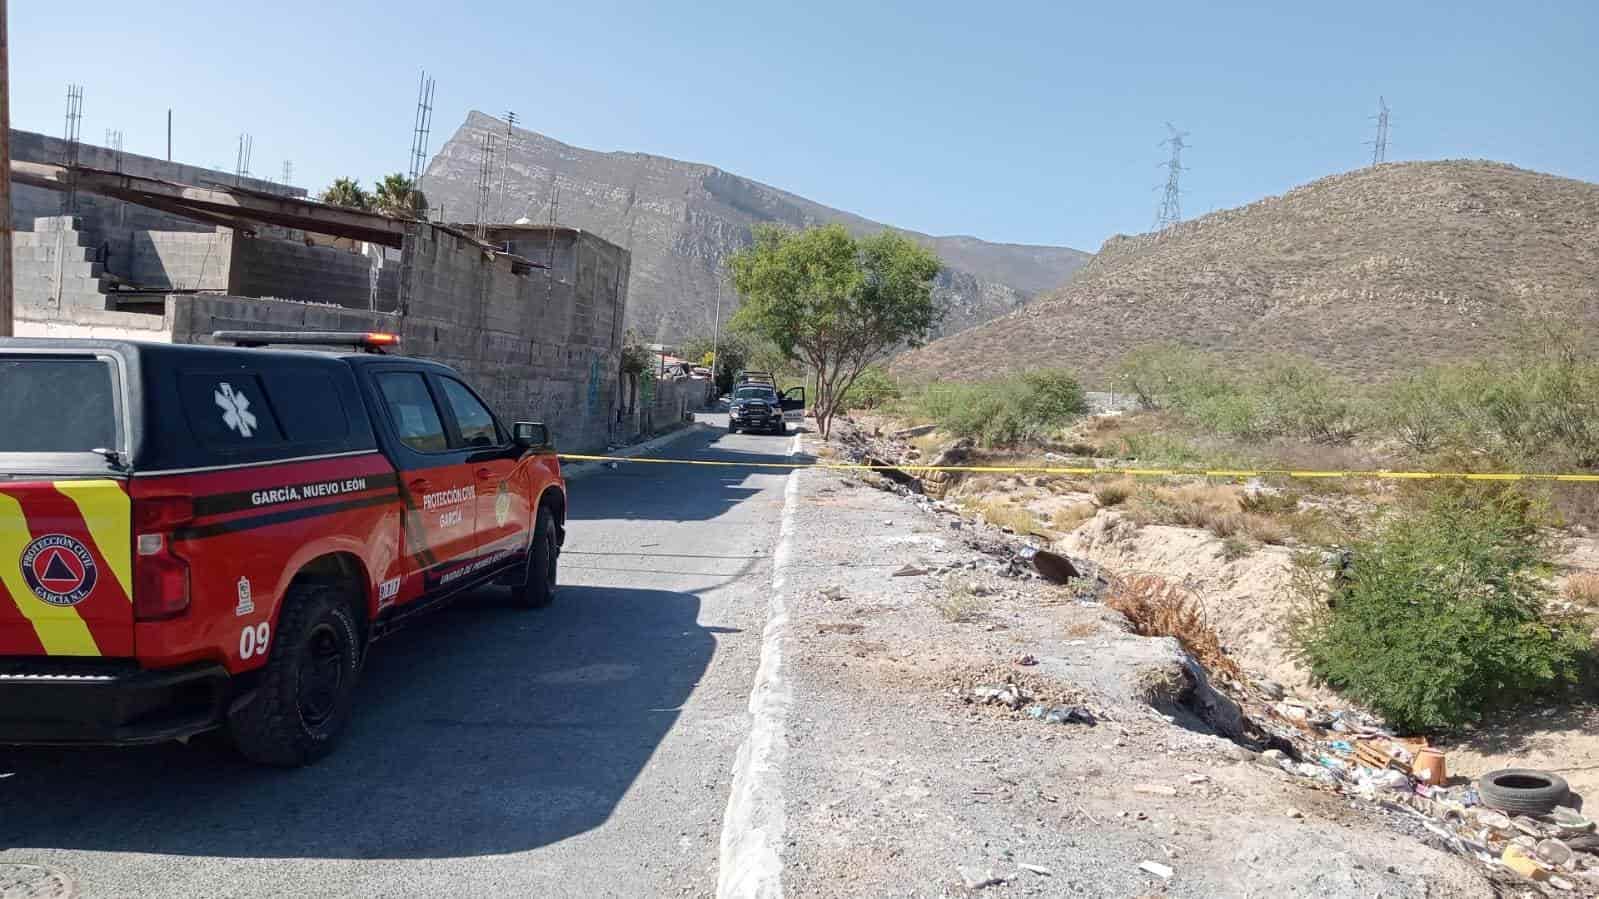 El cadáver de un hombre con múltiples golpes fue encontrado ayer en el municipio de García